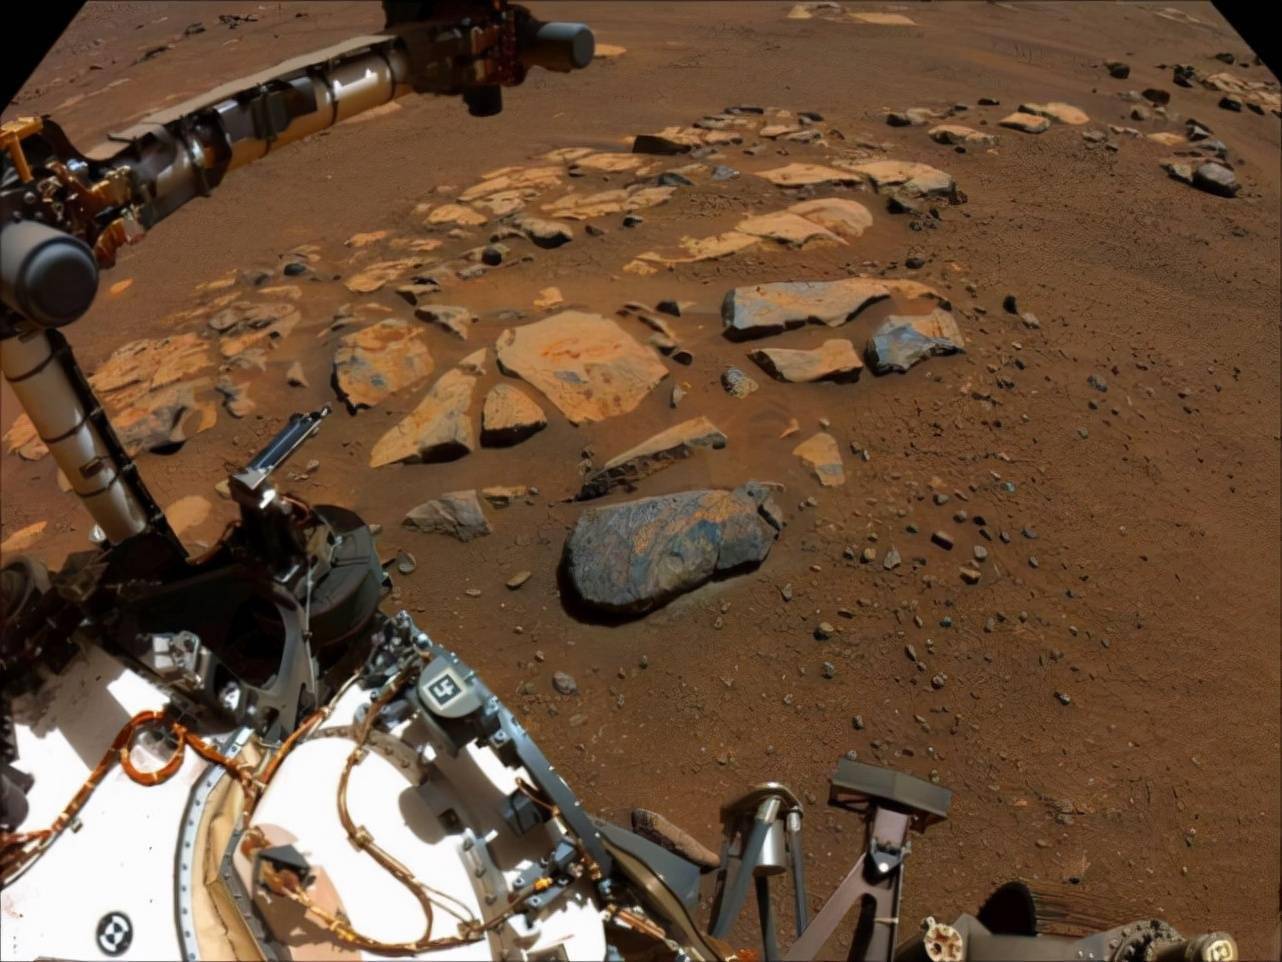 毅力号拍下真实火星照片,火星车周围岩石随处可见,毫无生机